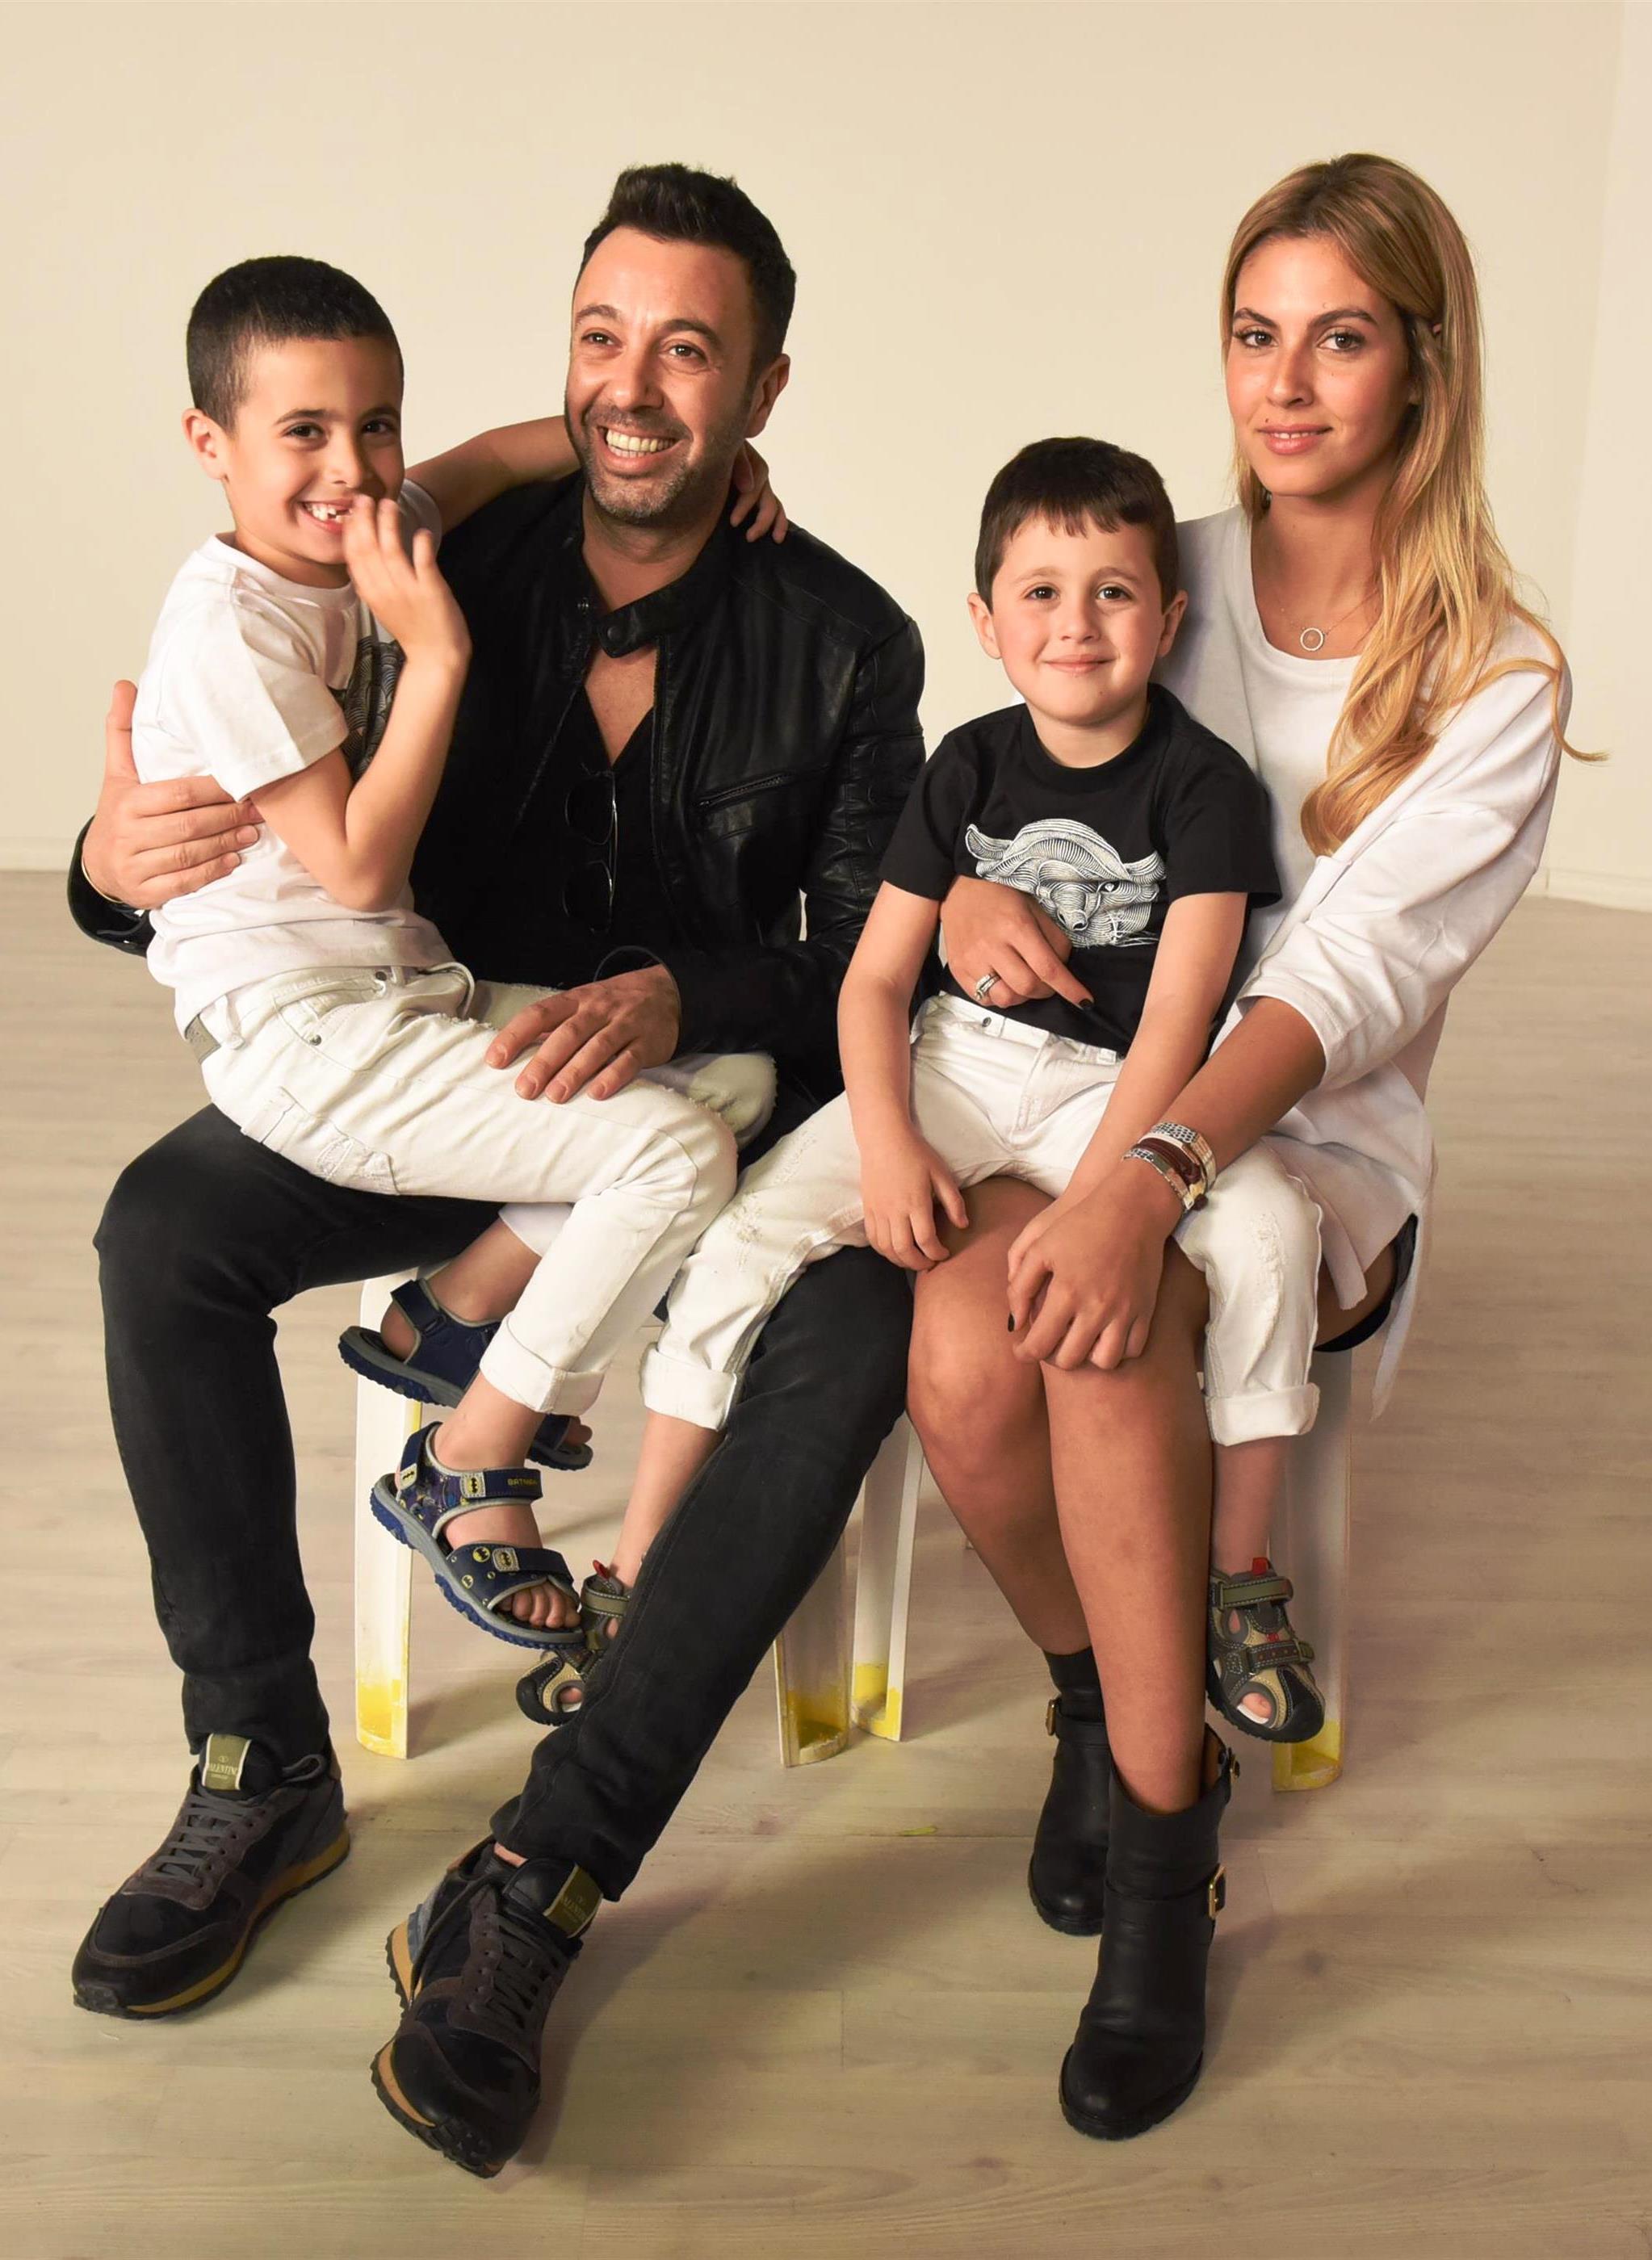  ליאור נרקיס רעייתו והילדים בצילומי הקמפיין של "נעלי גלי". צילום אלעד גוטמן